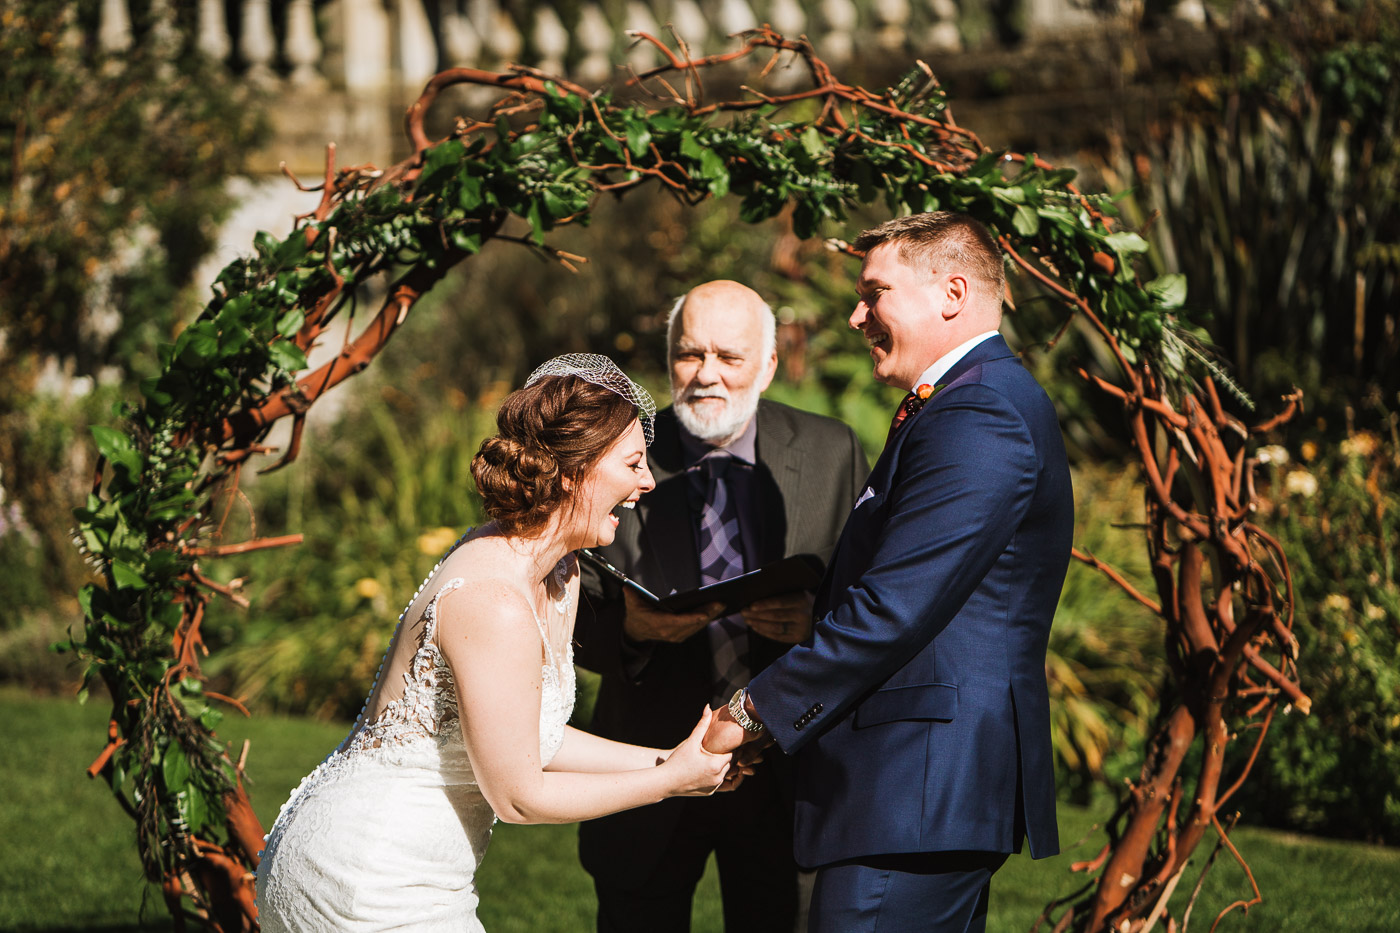 Victoria BC Wedding Photography - Hatley Castle Wedding Photography - Bear Mountain Wedding Photography